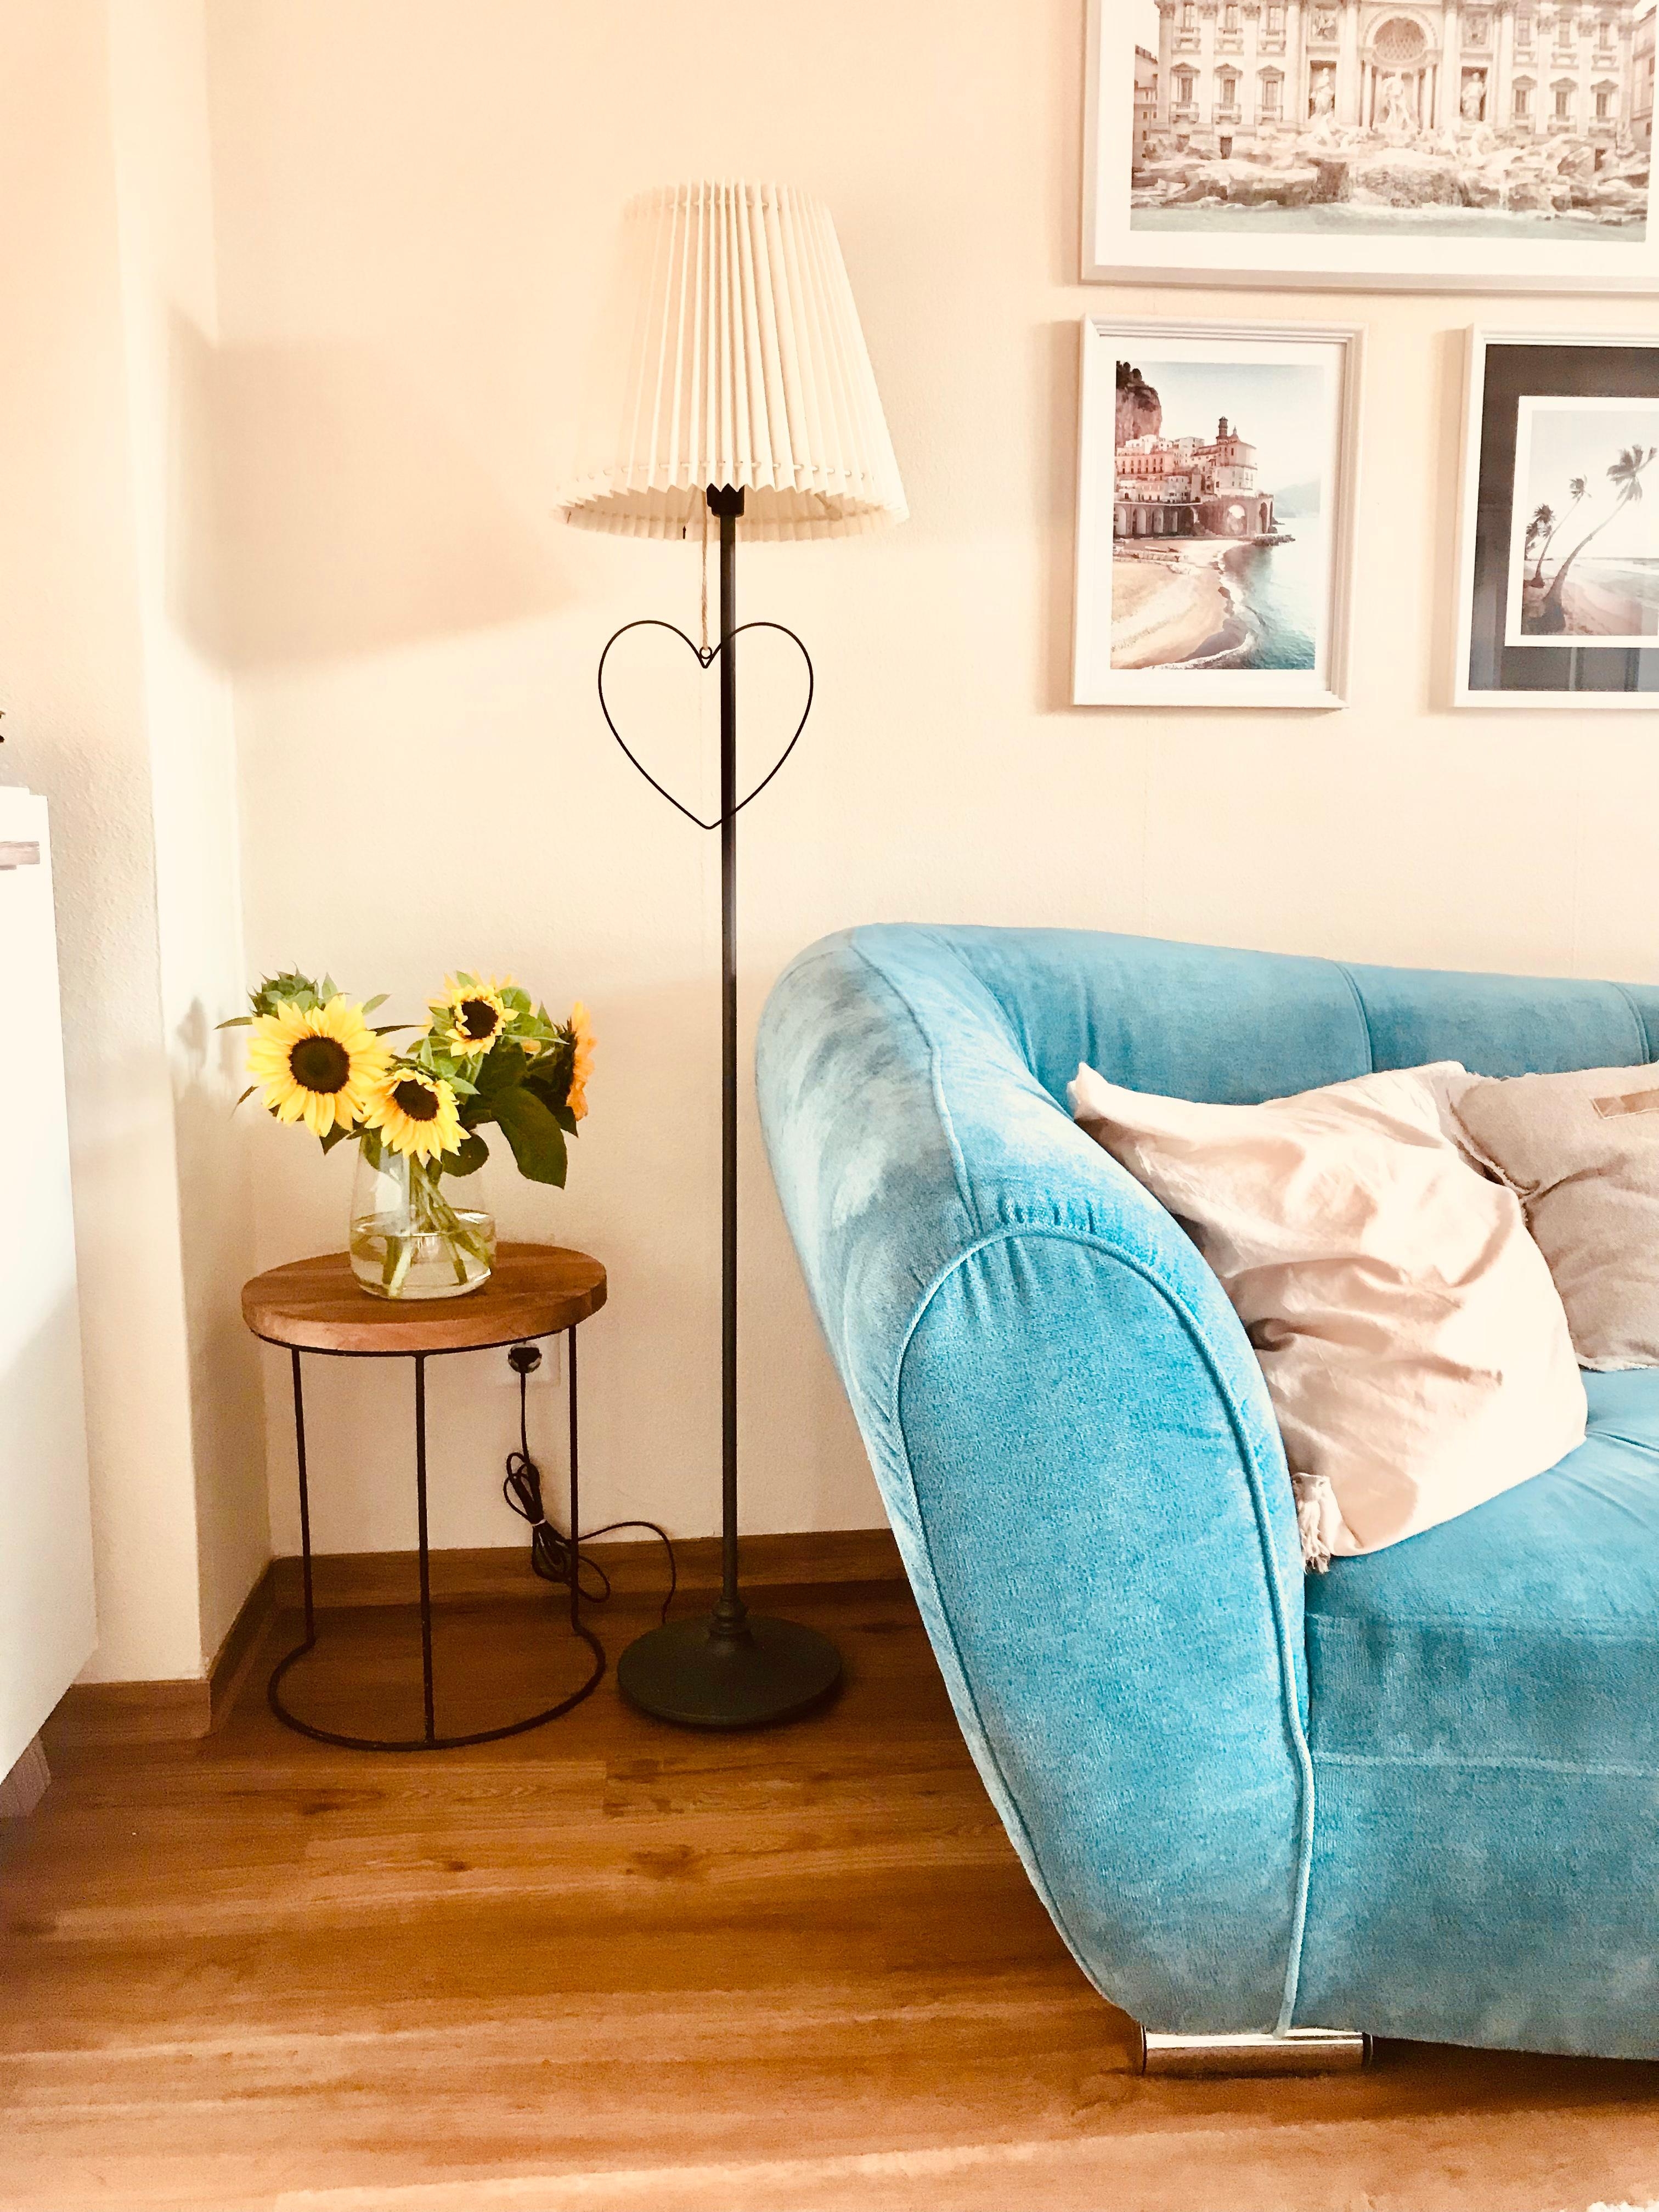 Samstag Nachmittag 🛋
#couchliebe #Sonnenblumen #stehlampe #bilderwand #cozy 